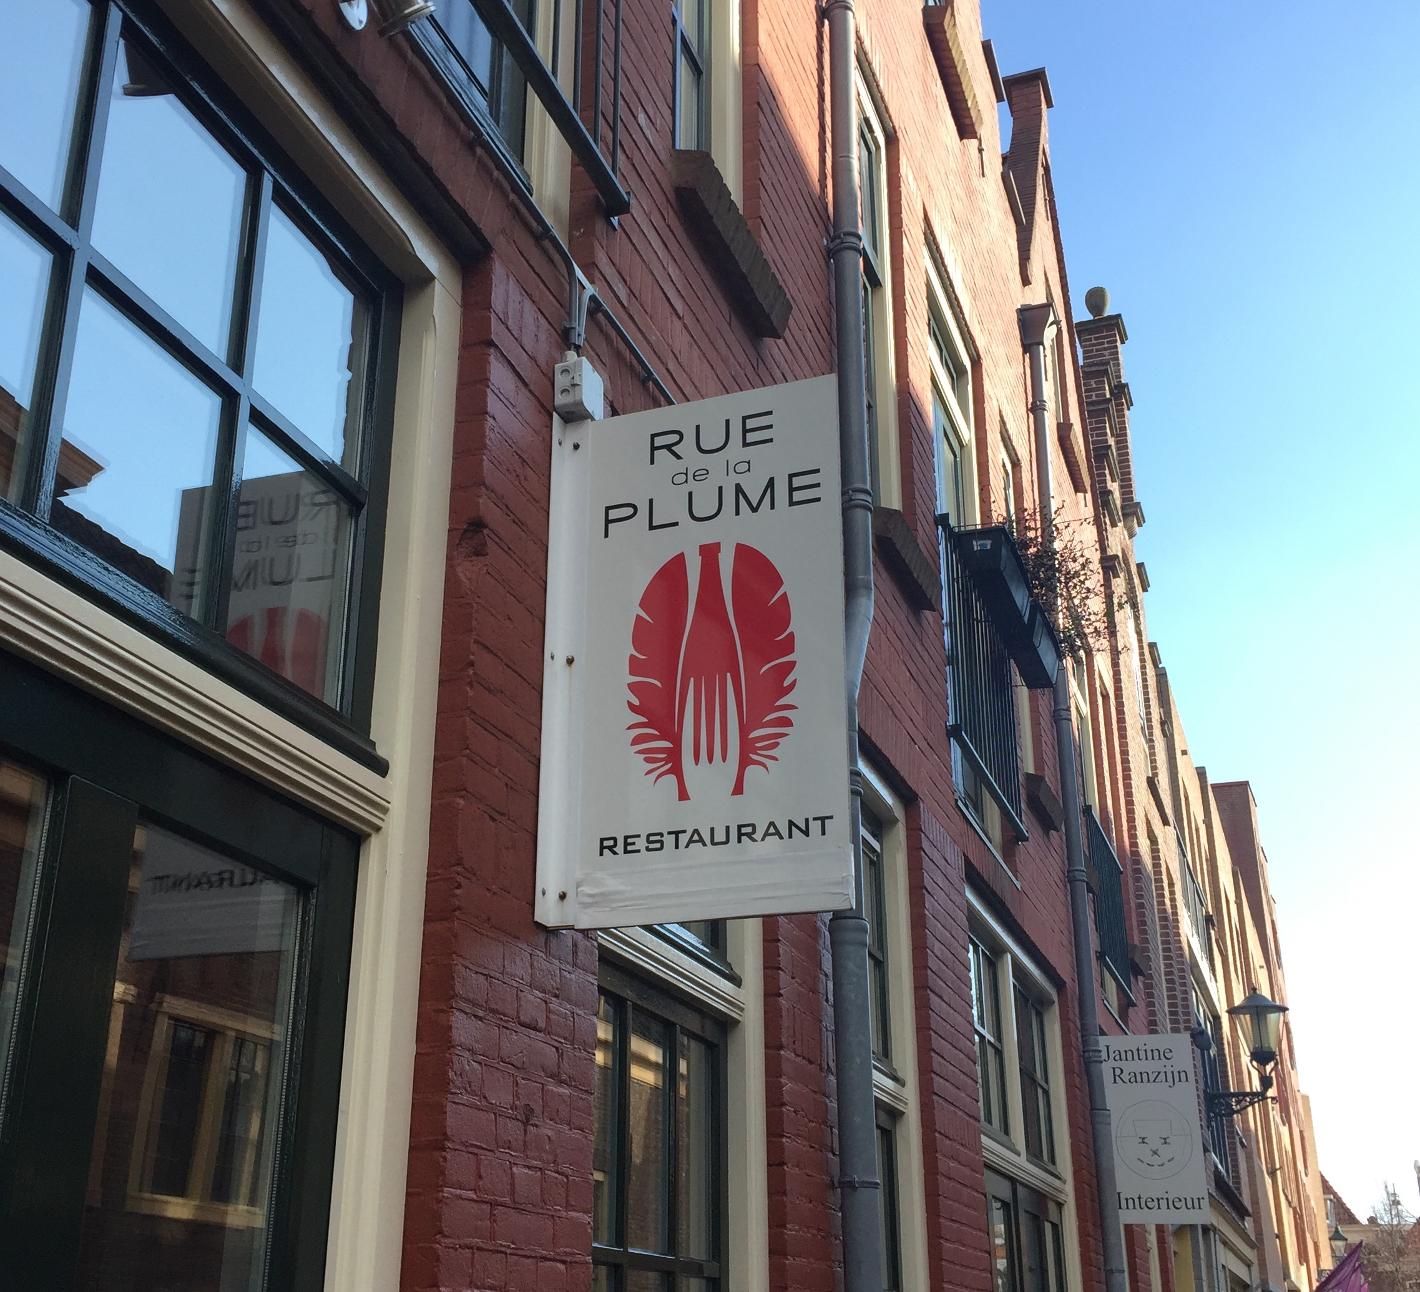 Foto Rue de la Plume in Alkmaar, Eten & drinken, Dineren - #1